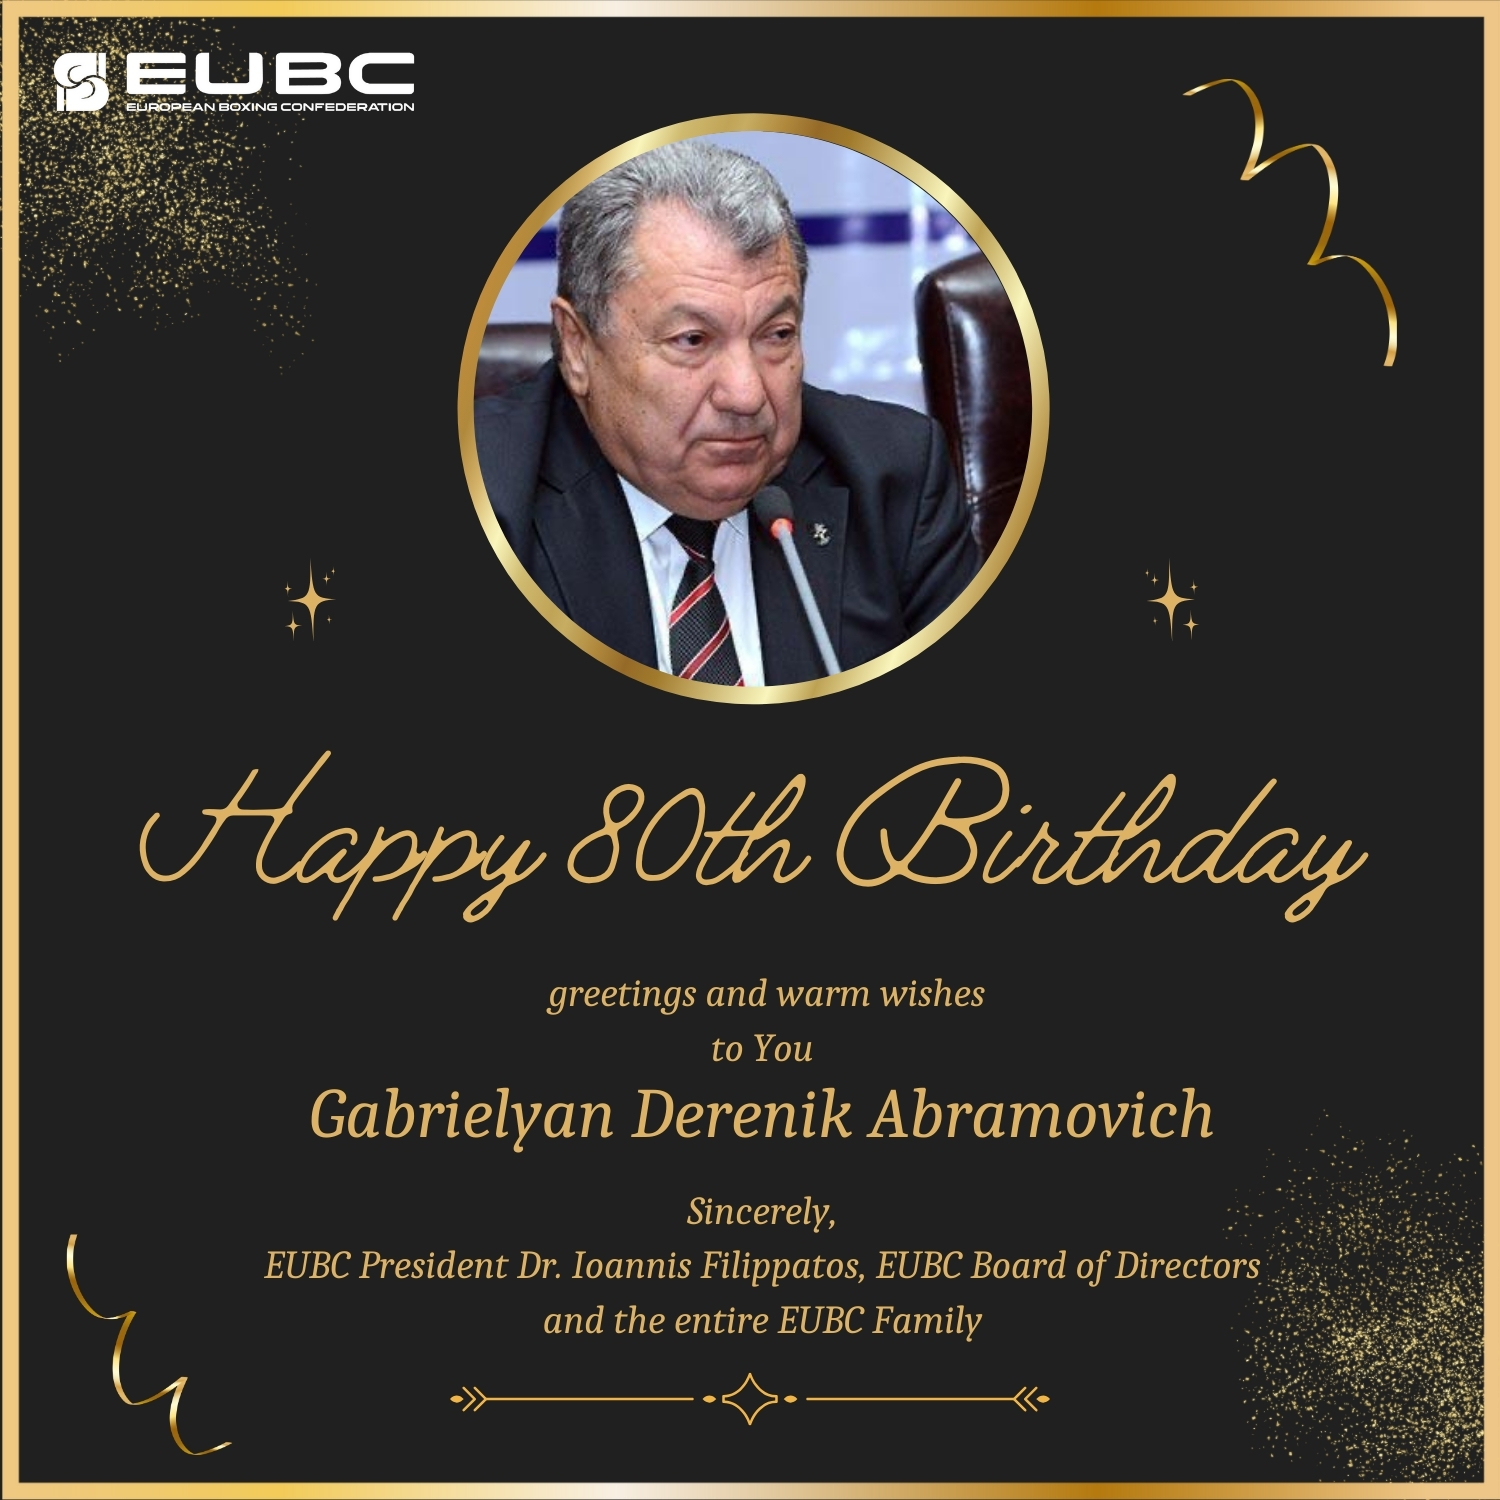 Happy Birthday and best wishes to Gabrielyan Derenik Abramovich